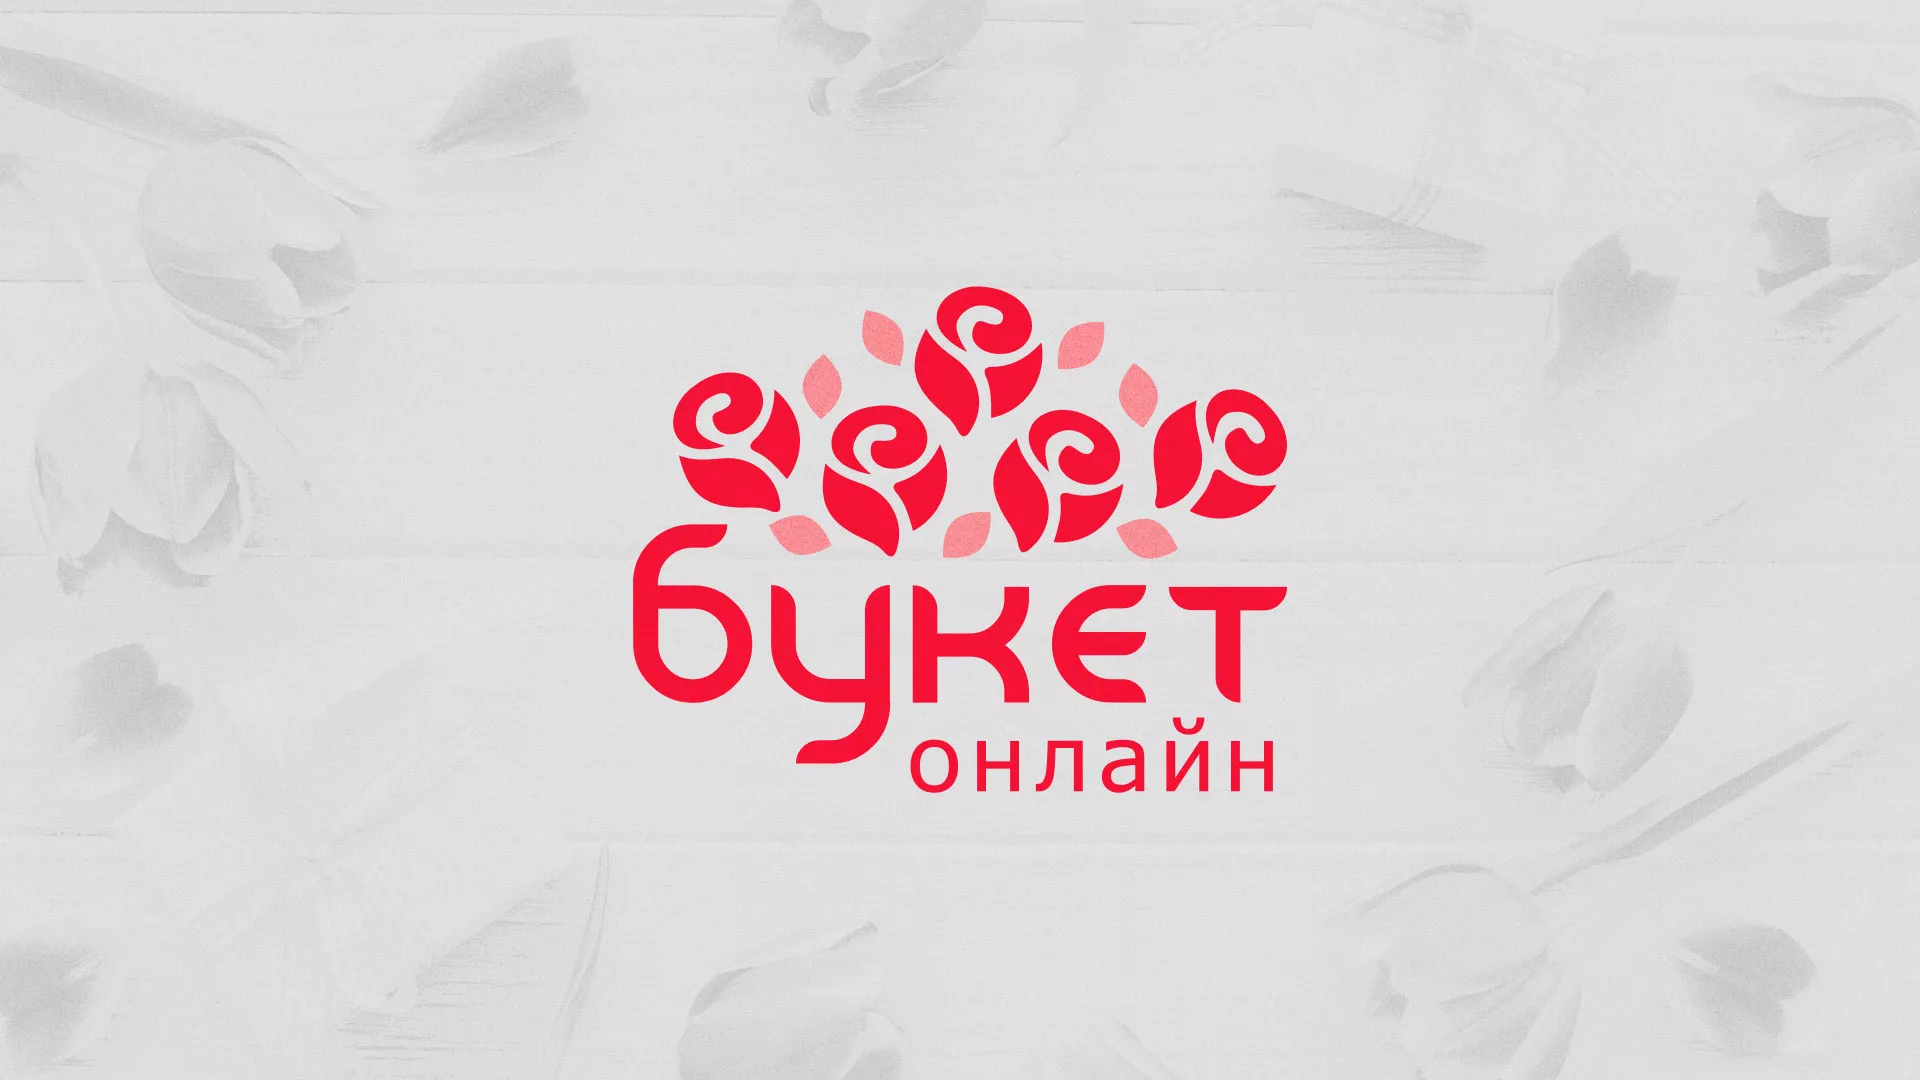 Создание интернет-магазина «Букет-онлайн» по цветам в Саяногорске